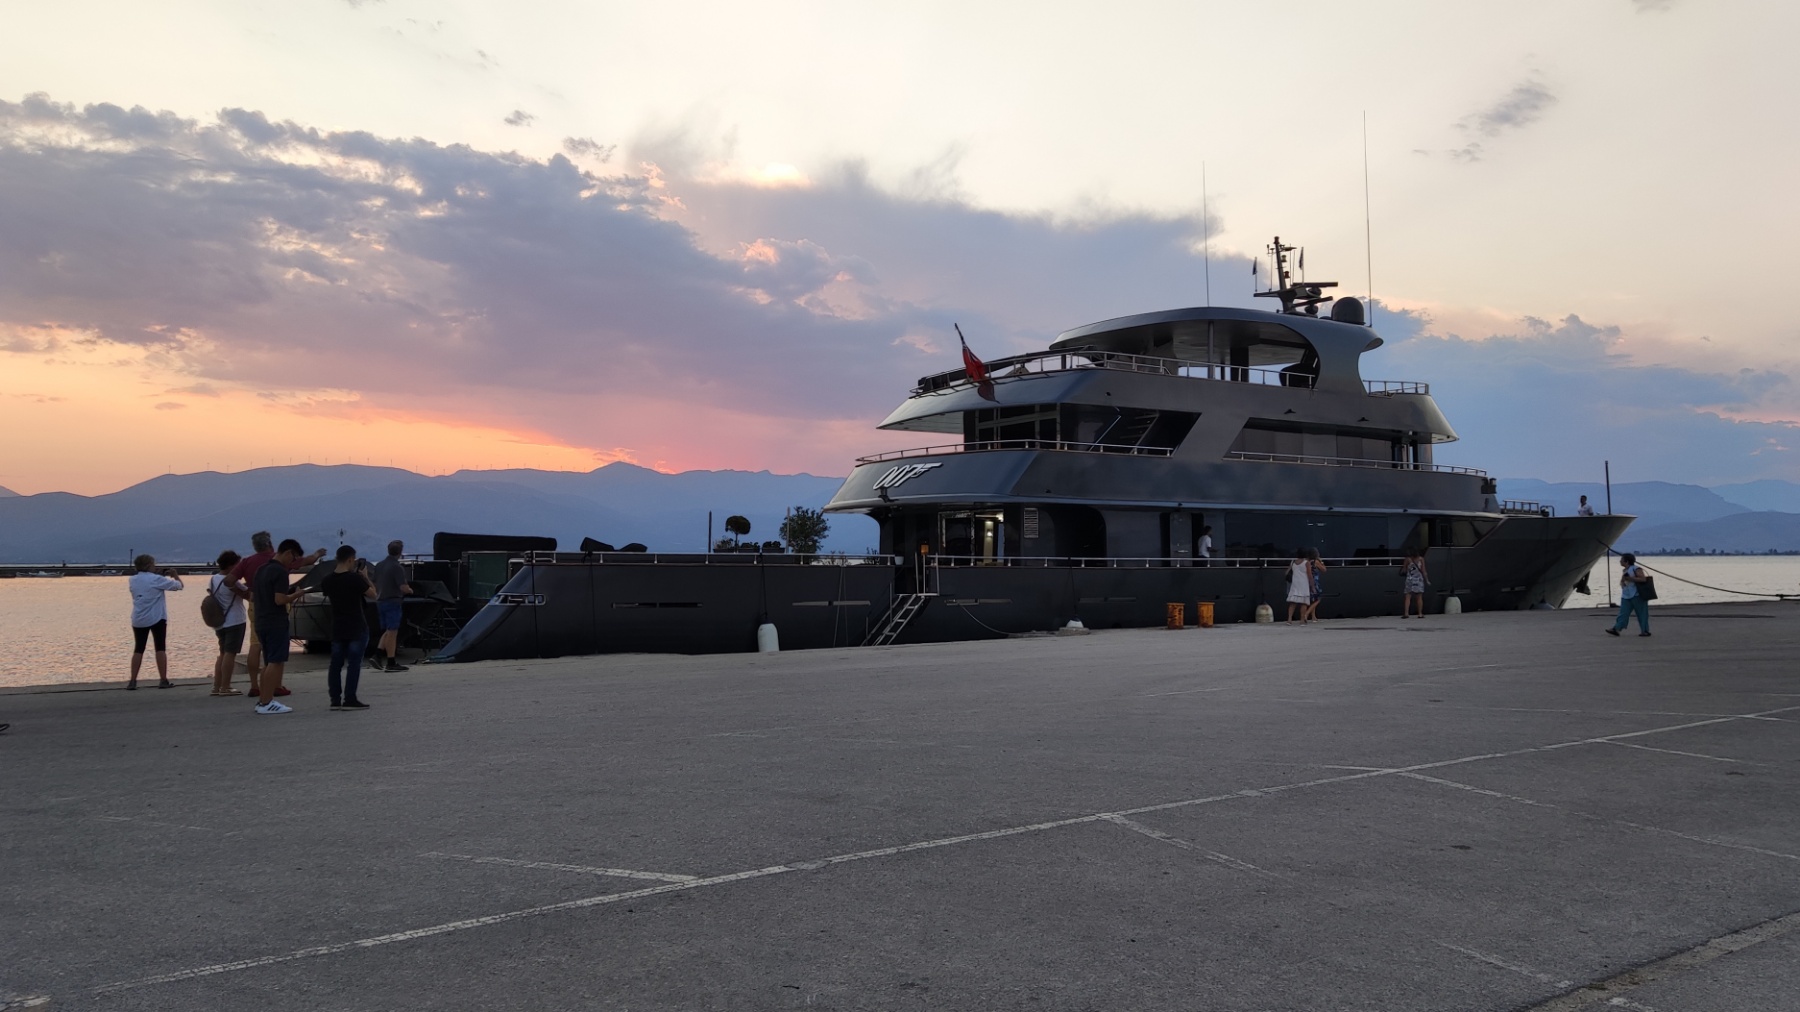 Ναύπλιο: Ένας …πράκτορας στο λιμάνι – Το πλοίο του 007 που κεντρίζει τα βλέμματα όλων